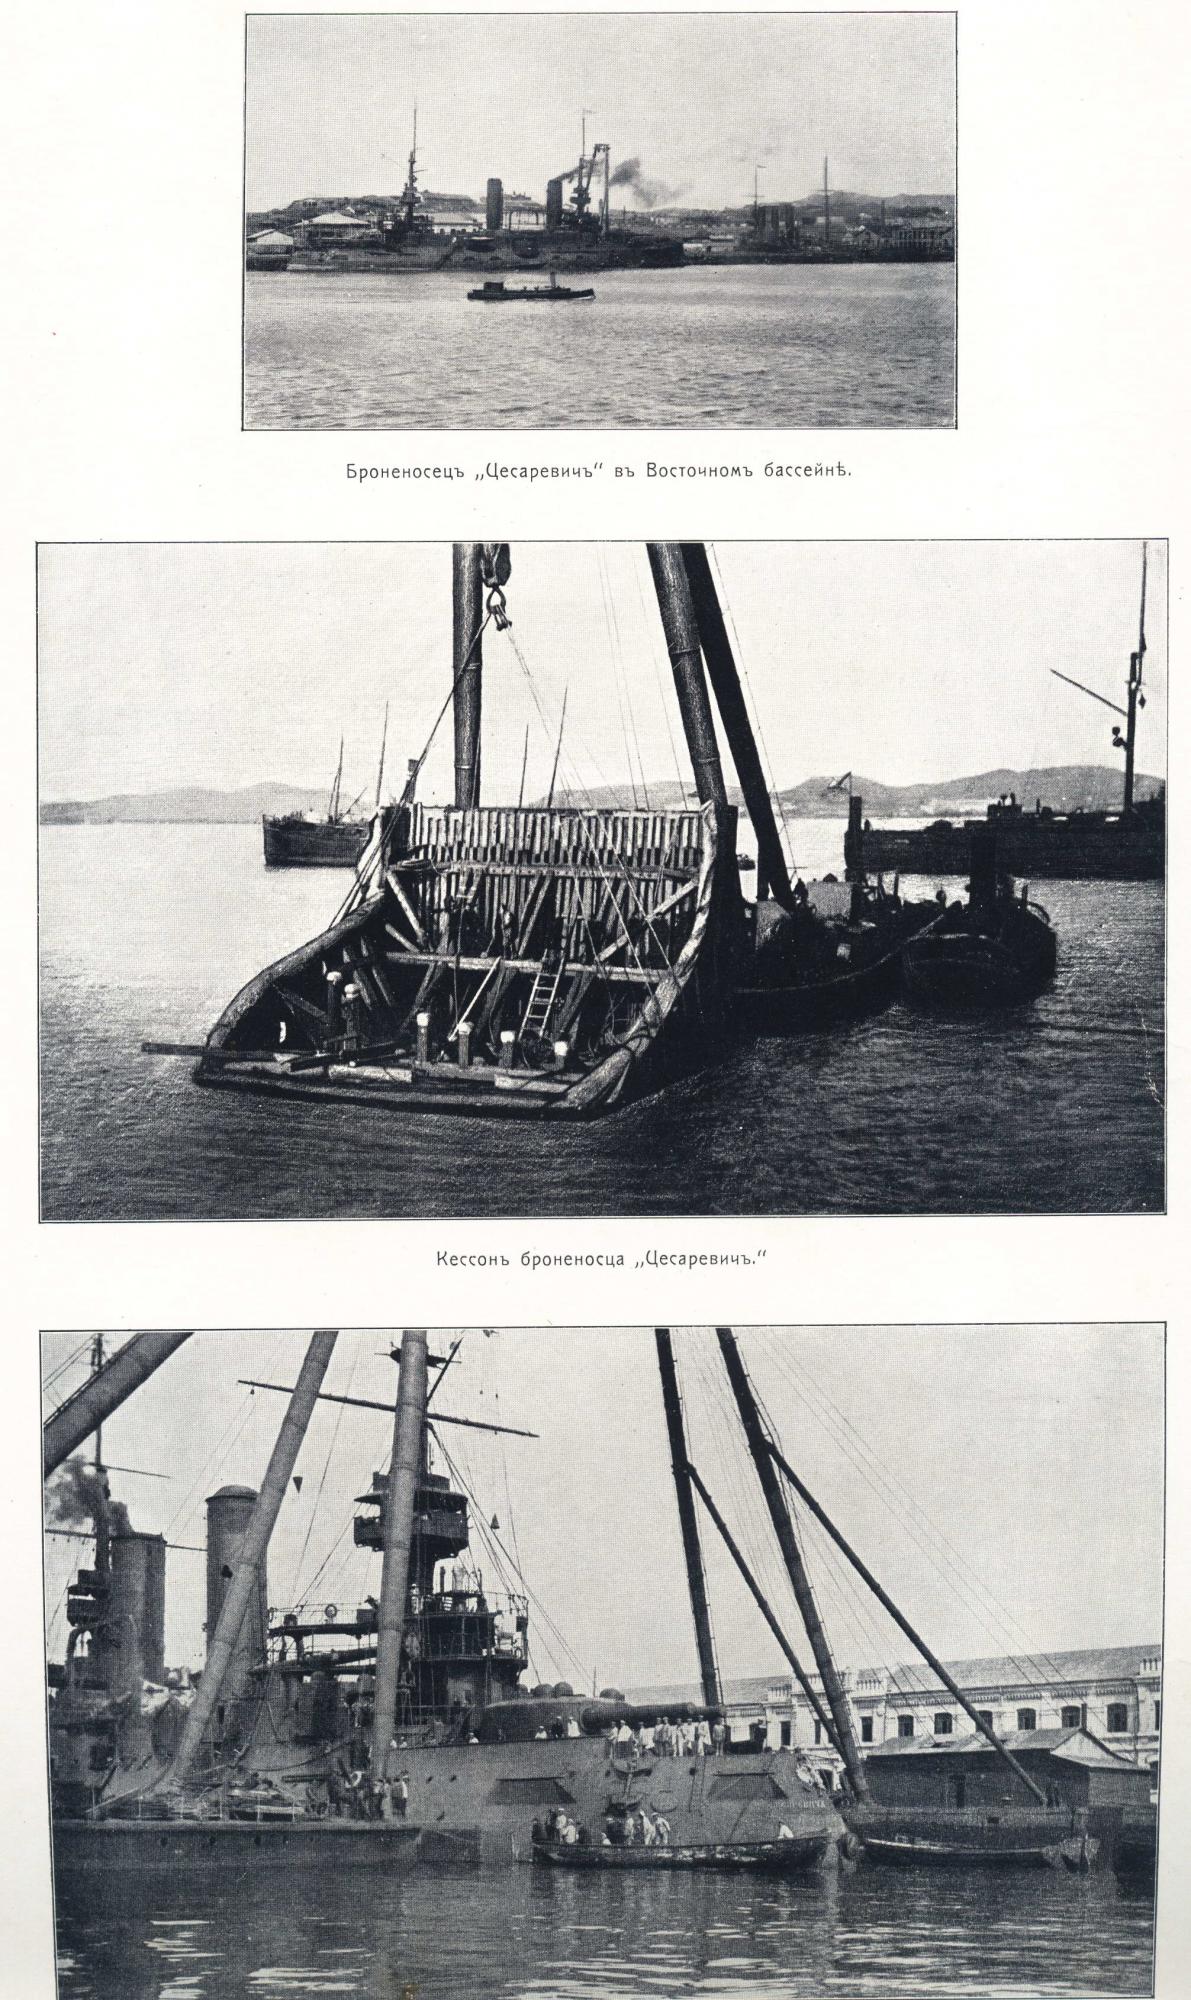 Порт-Артурский альбом, 1904-1905 гг. Часть 1.